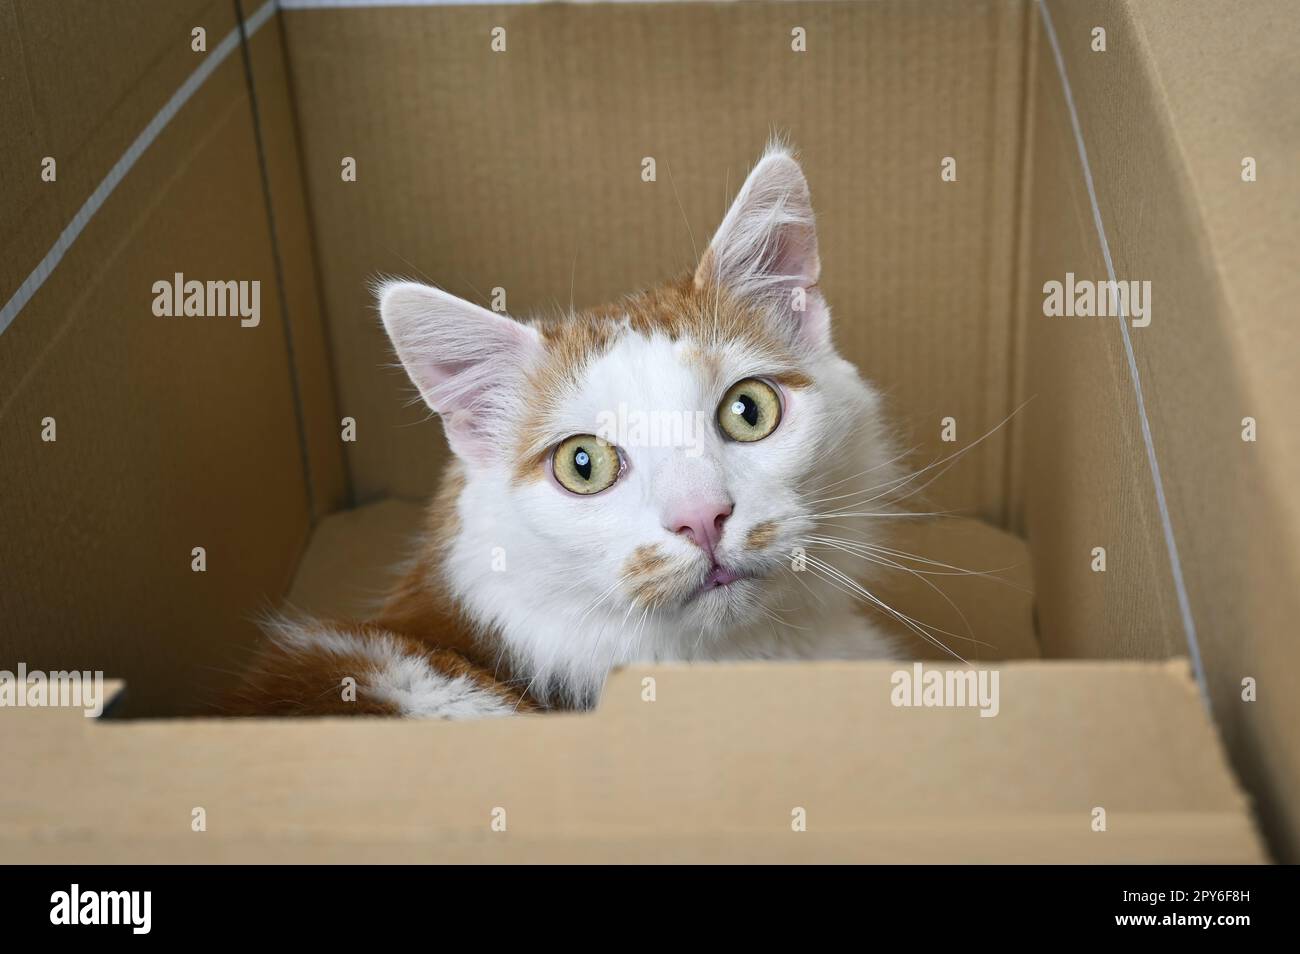 Le joli chat est sorti avec impatience d'une boîte en carton. Banque D'Images